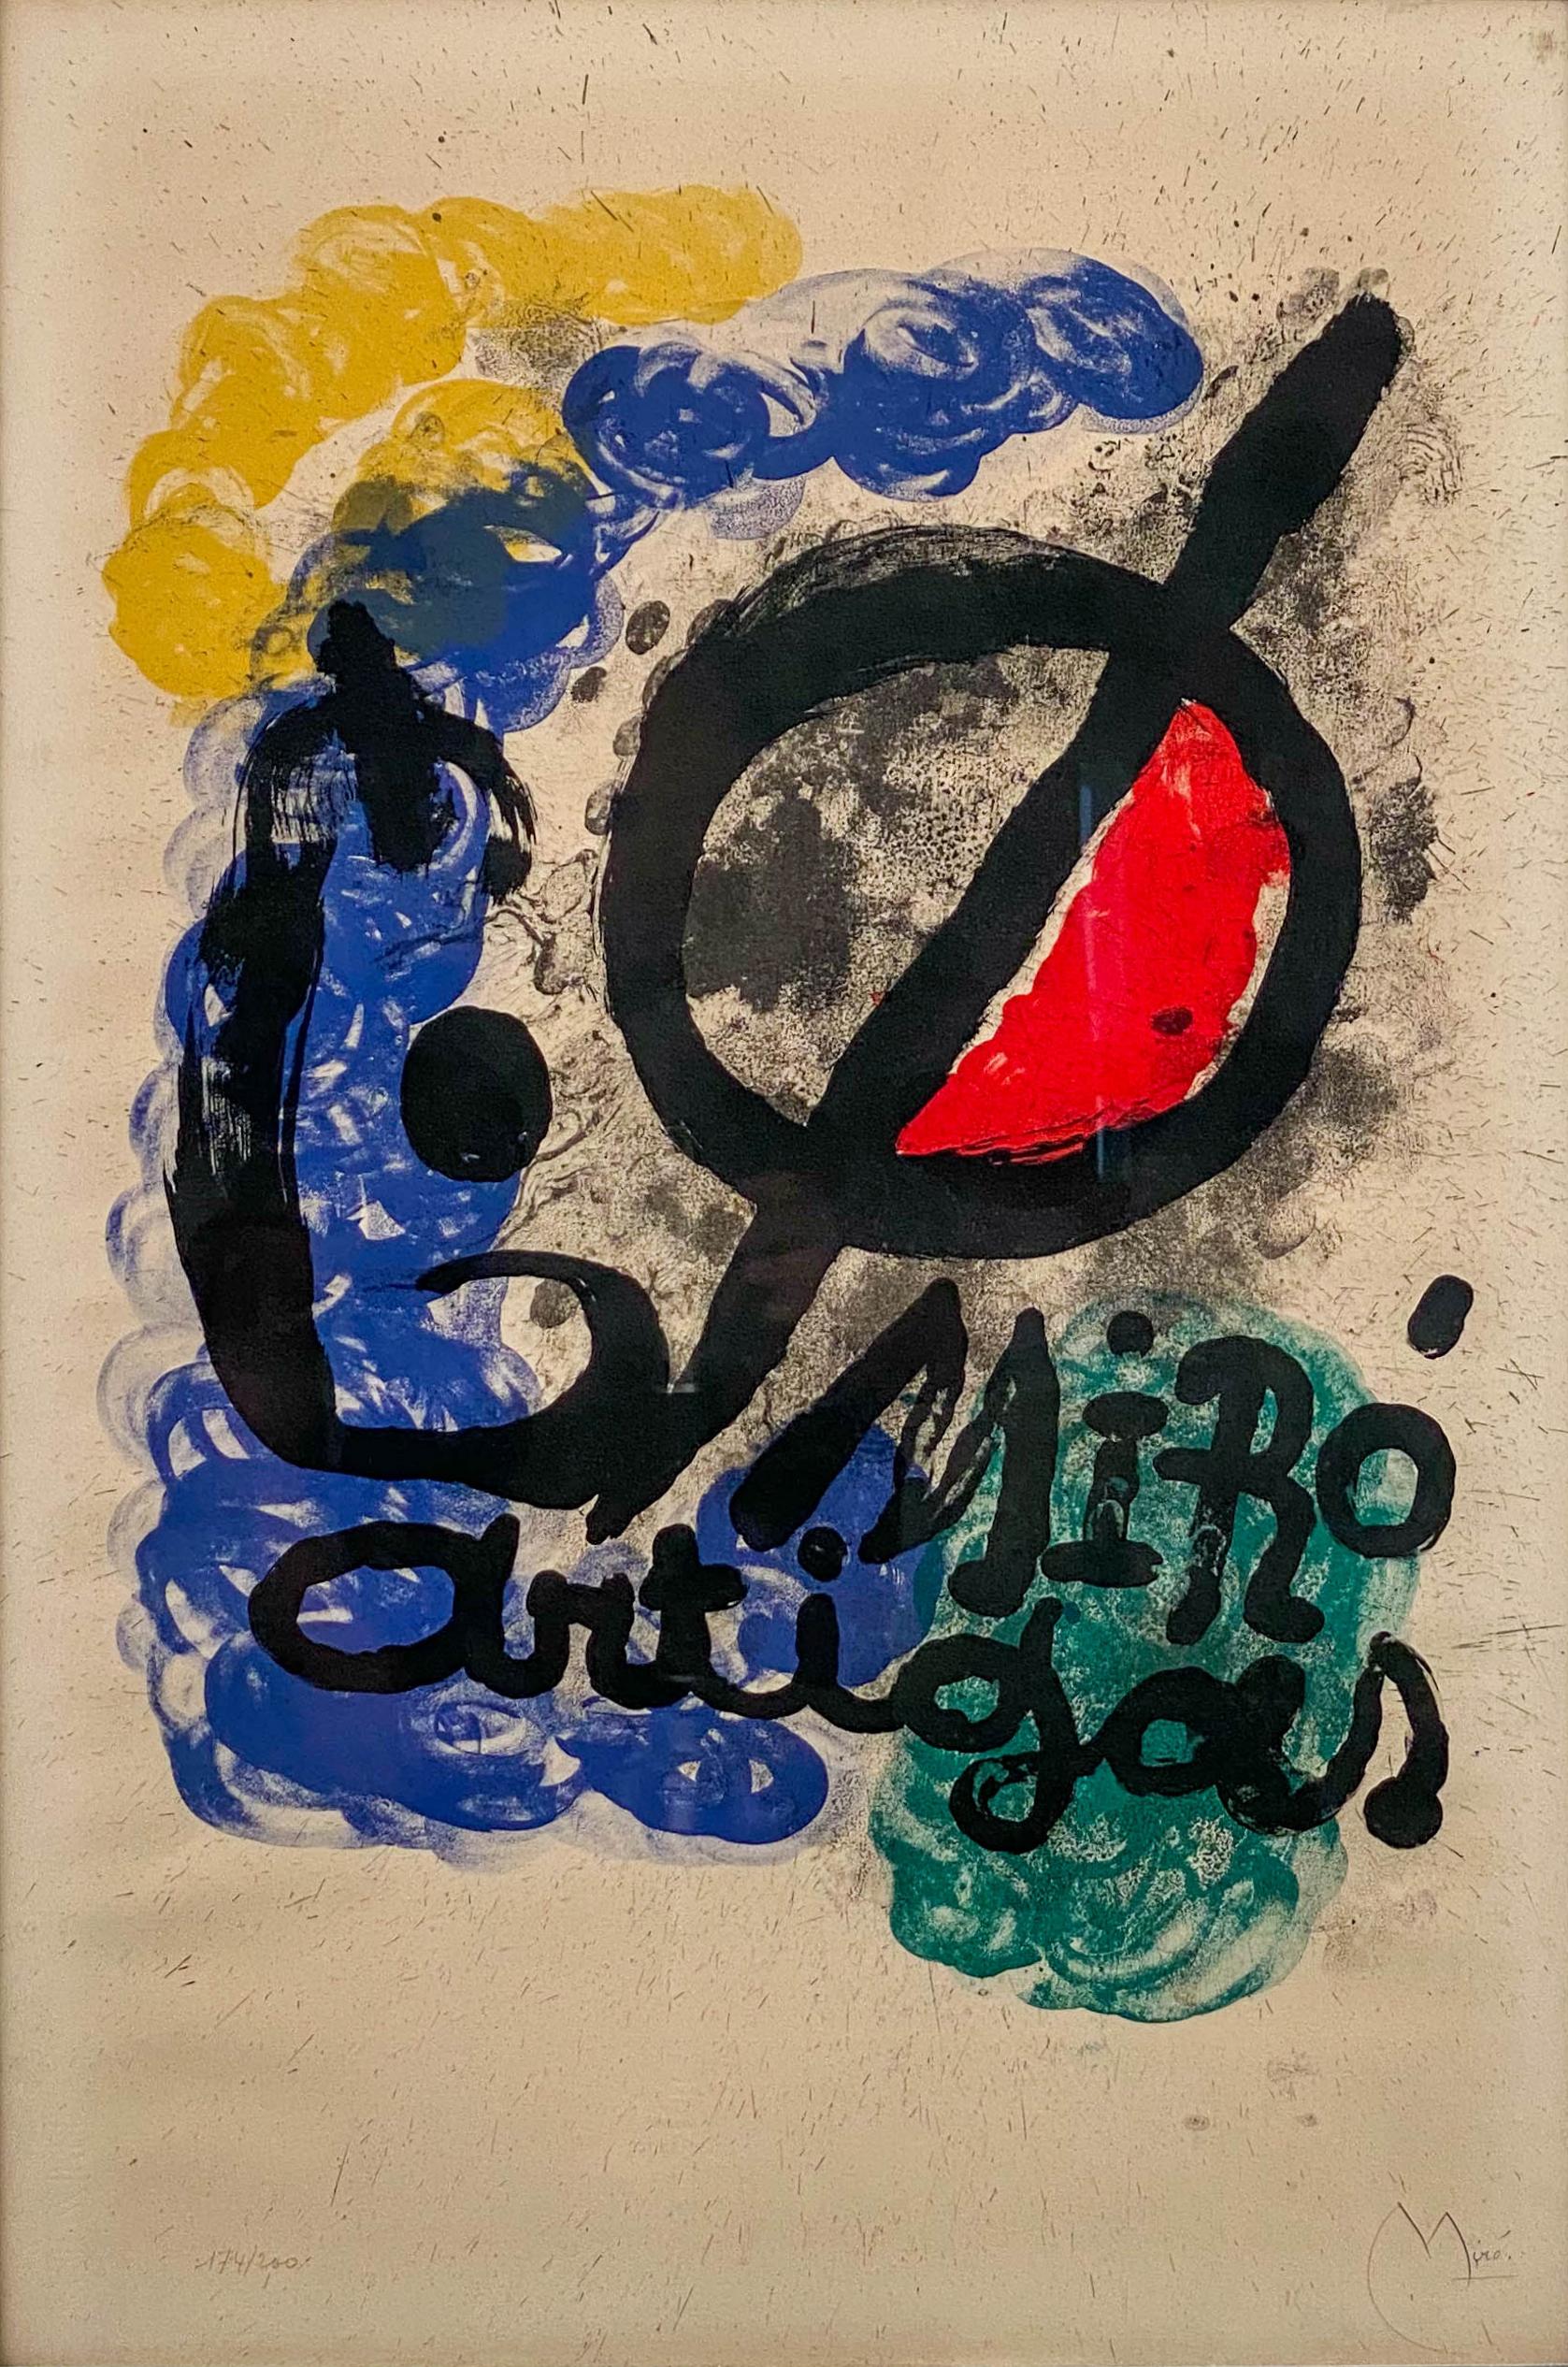 Affiche pour l'Exposition Miro-Artigas, 1963 - Abstrait Mixed Media Art par Joan Miró